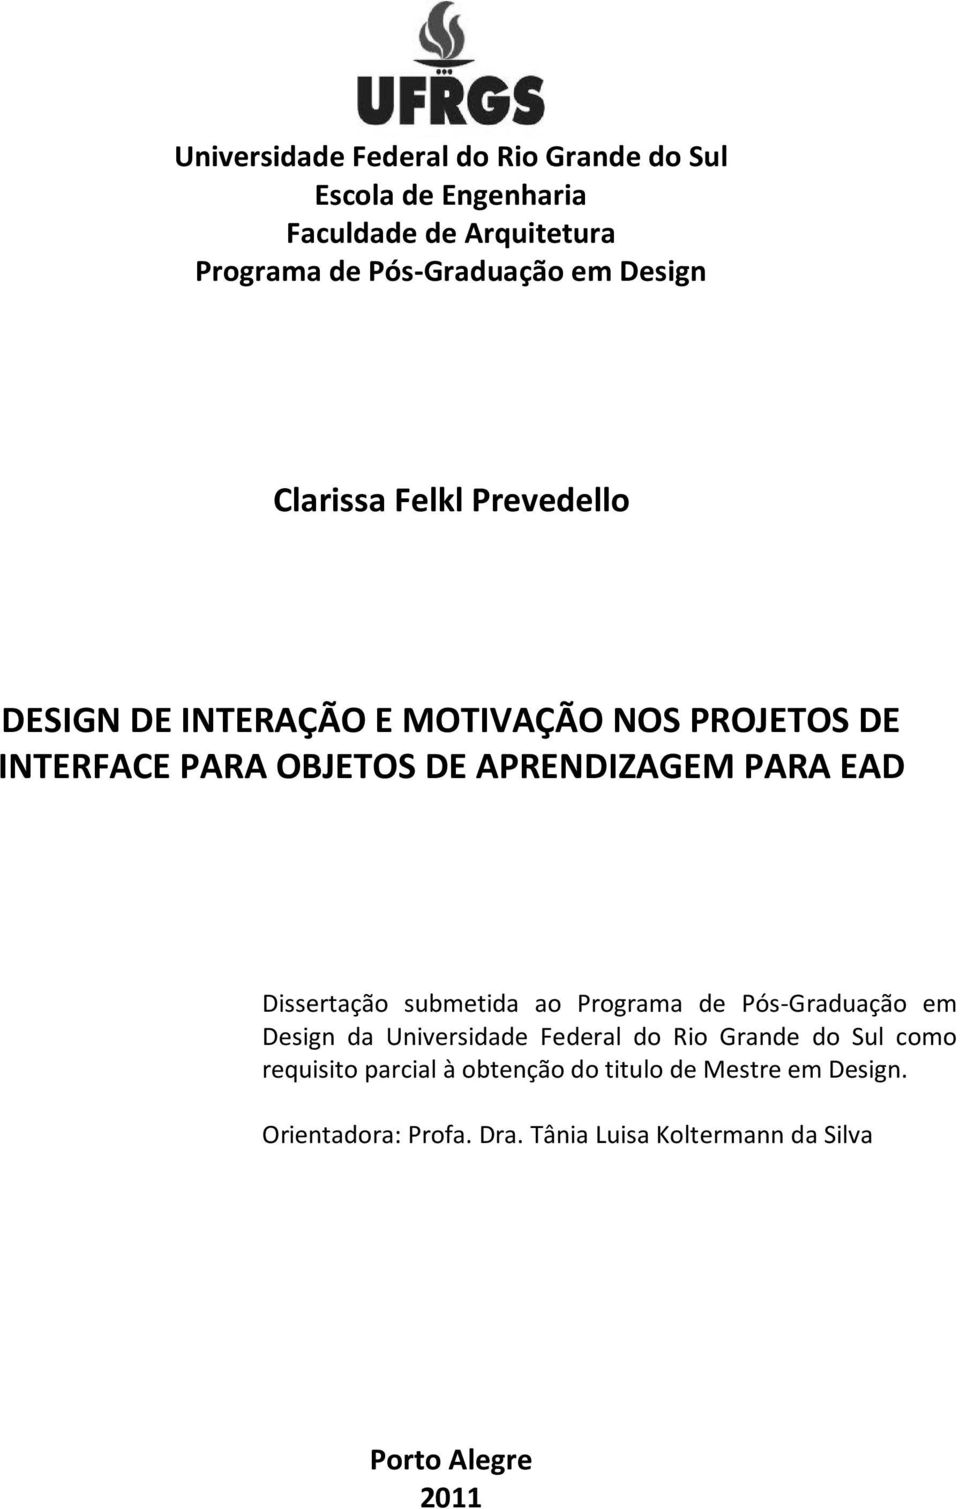 Dissertação submetida ao Programa de Pós-Graduação em Design da Universidade Federal do Rio Grande do Sul como requisito